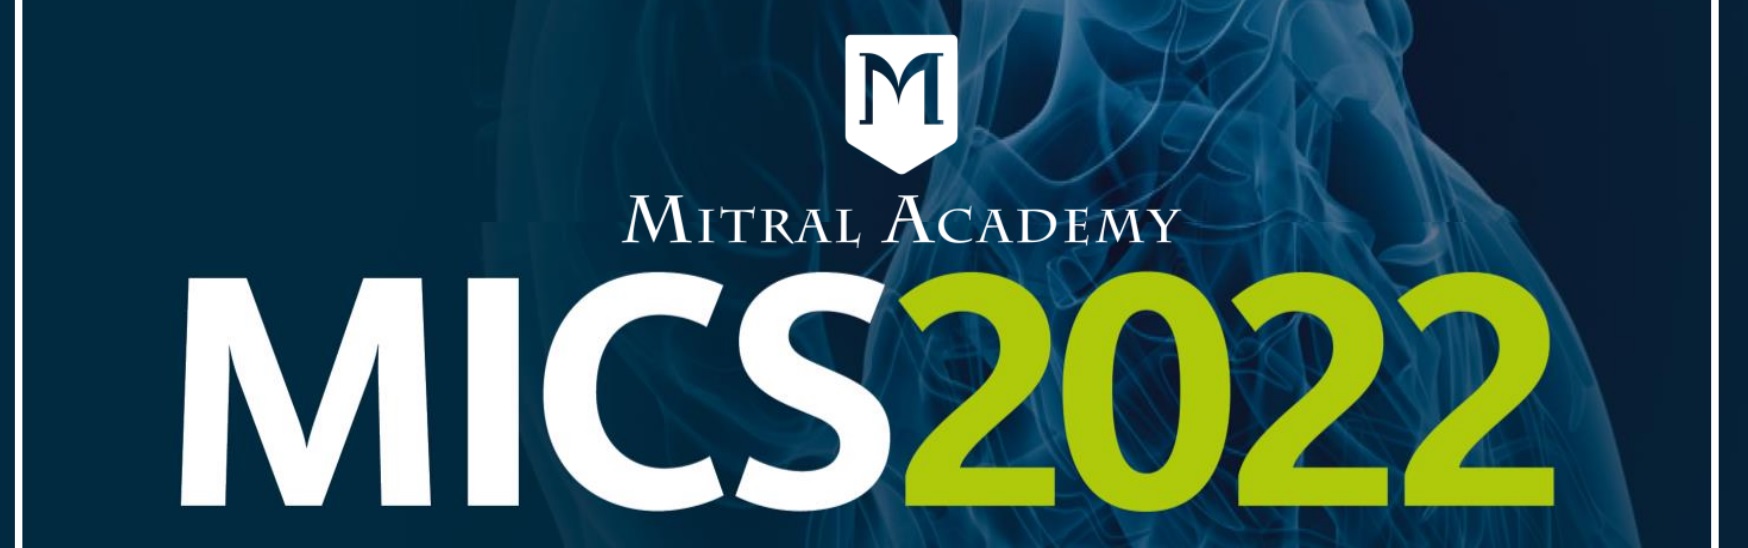 MICS 2022 – congresso internazionale dedicato alla cardiochirurgia mininvasiva